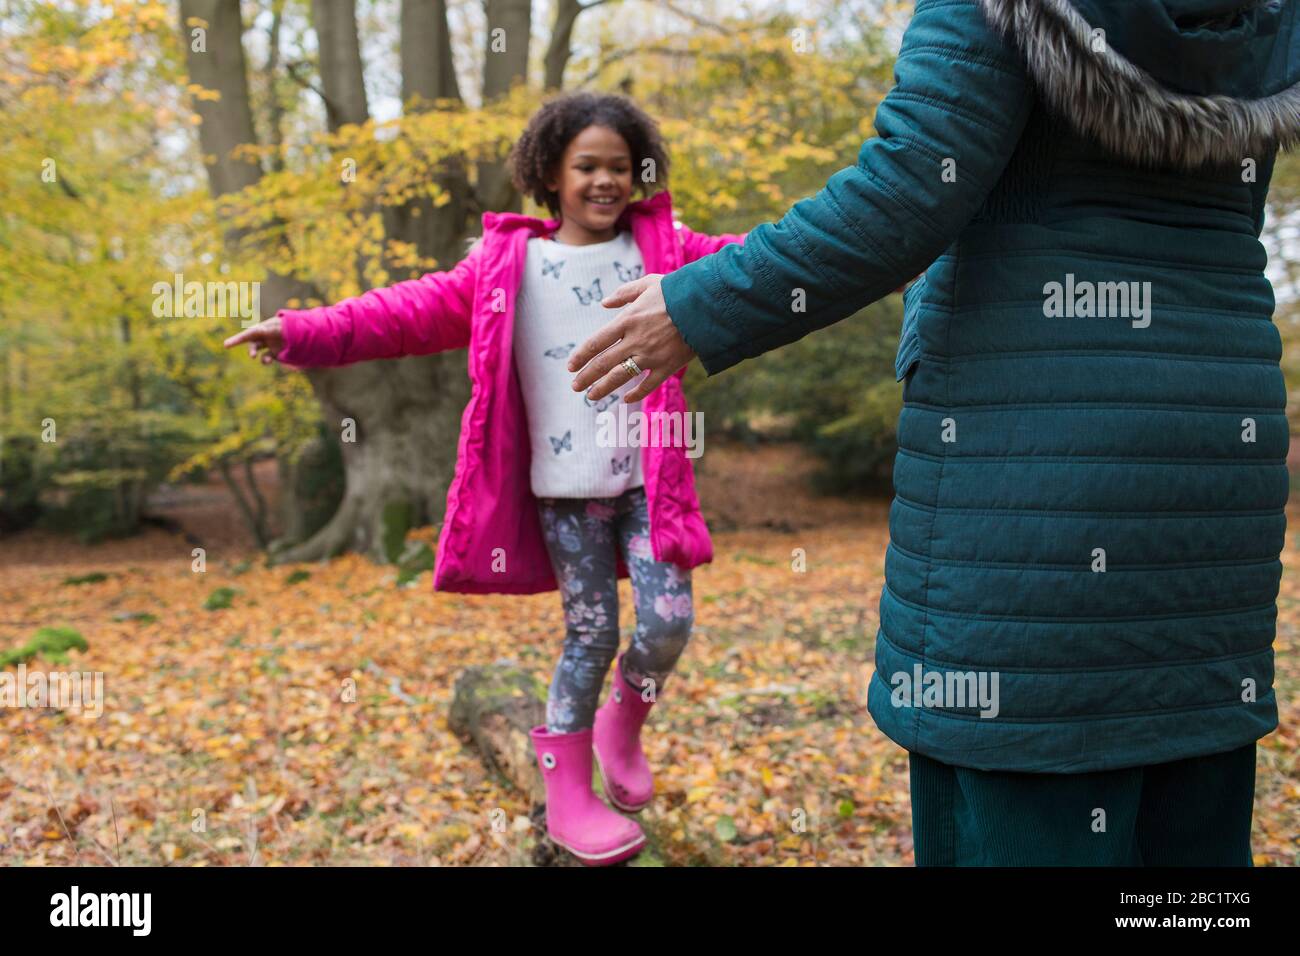 Fröhliche Mädchenbalance auf dem gefallenen Holzeinbauch im Herbstwald Stockfoto